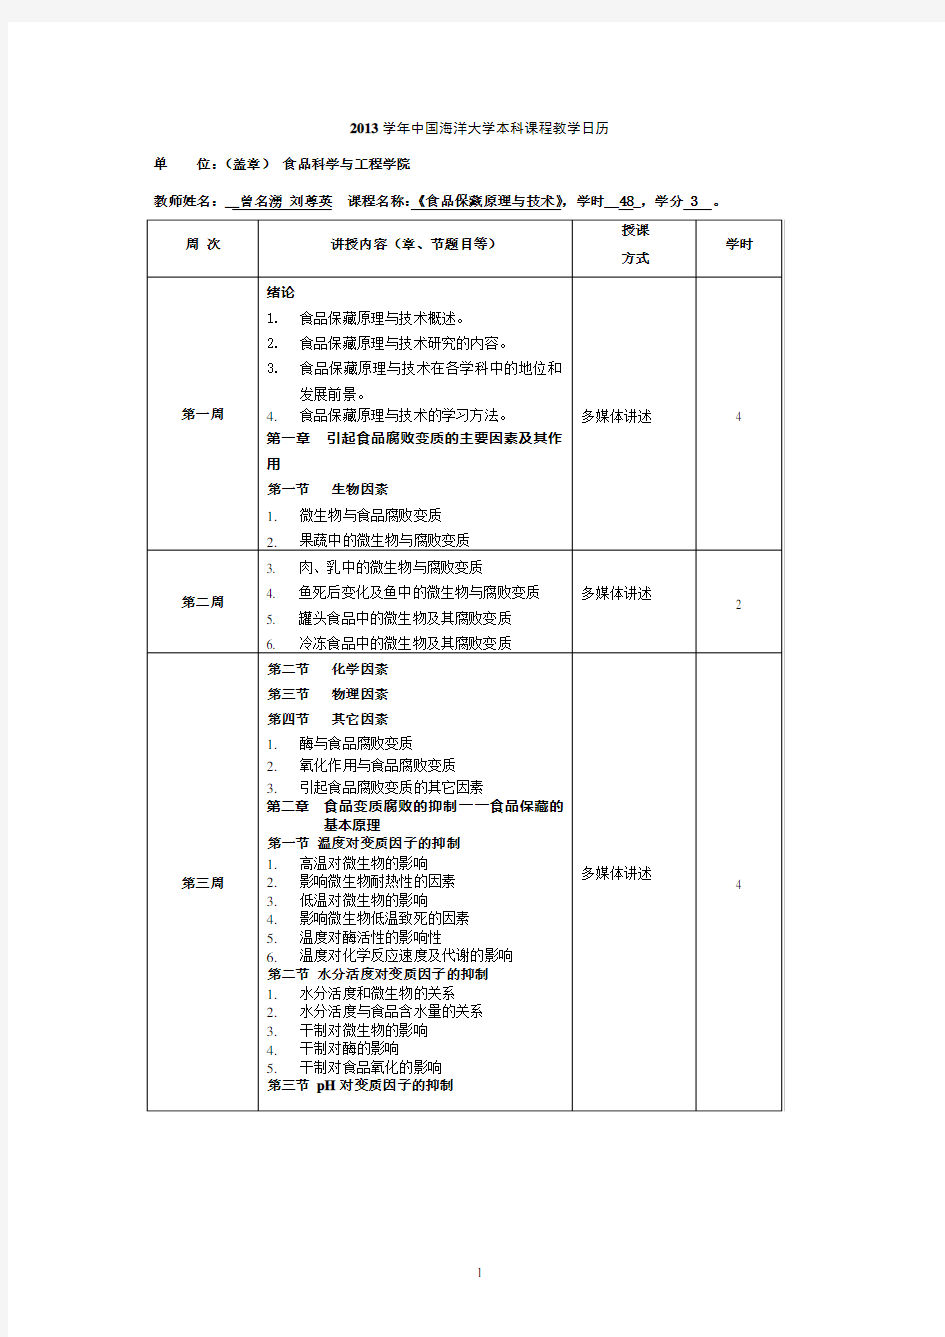 中国海洋大学 食品保藏原理与技术 教学日历